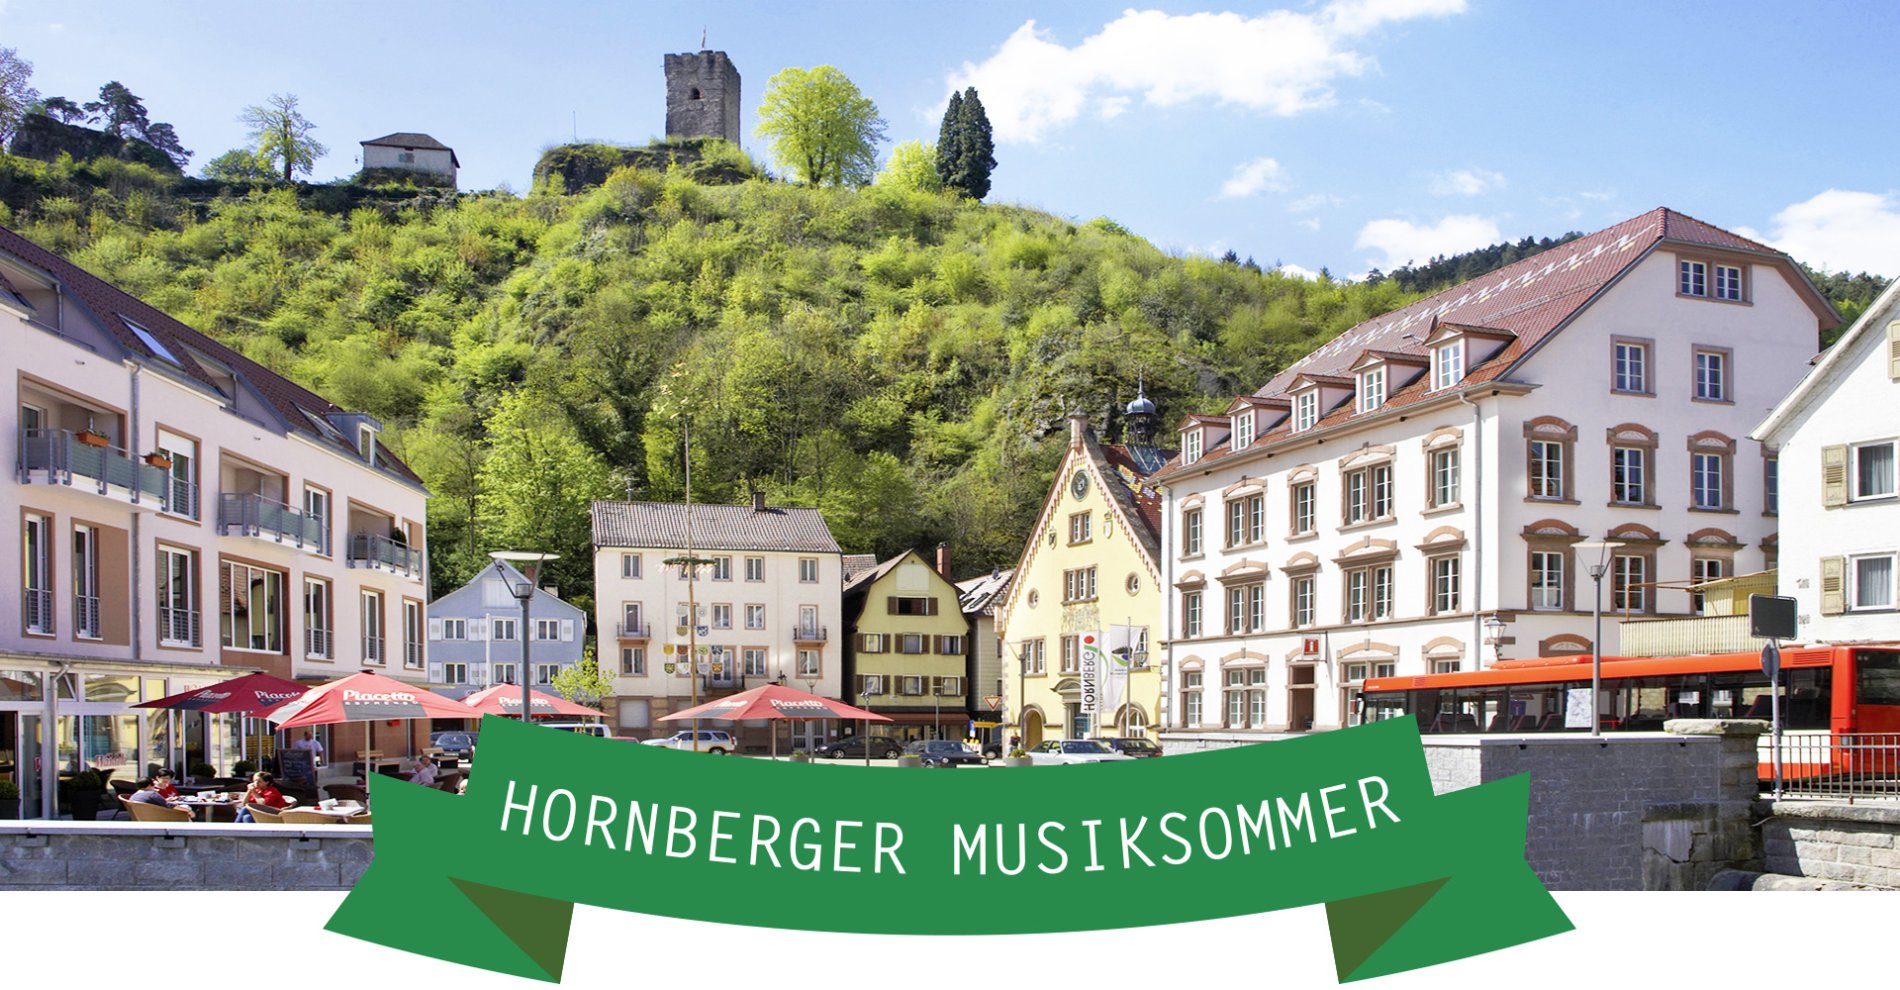 Hornberger Musiksommer / Urheber: Stadt Hornberg